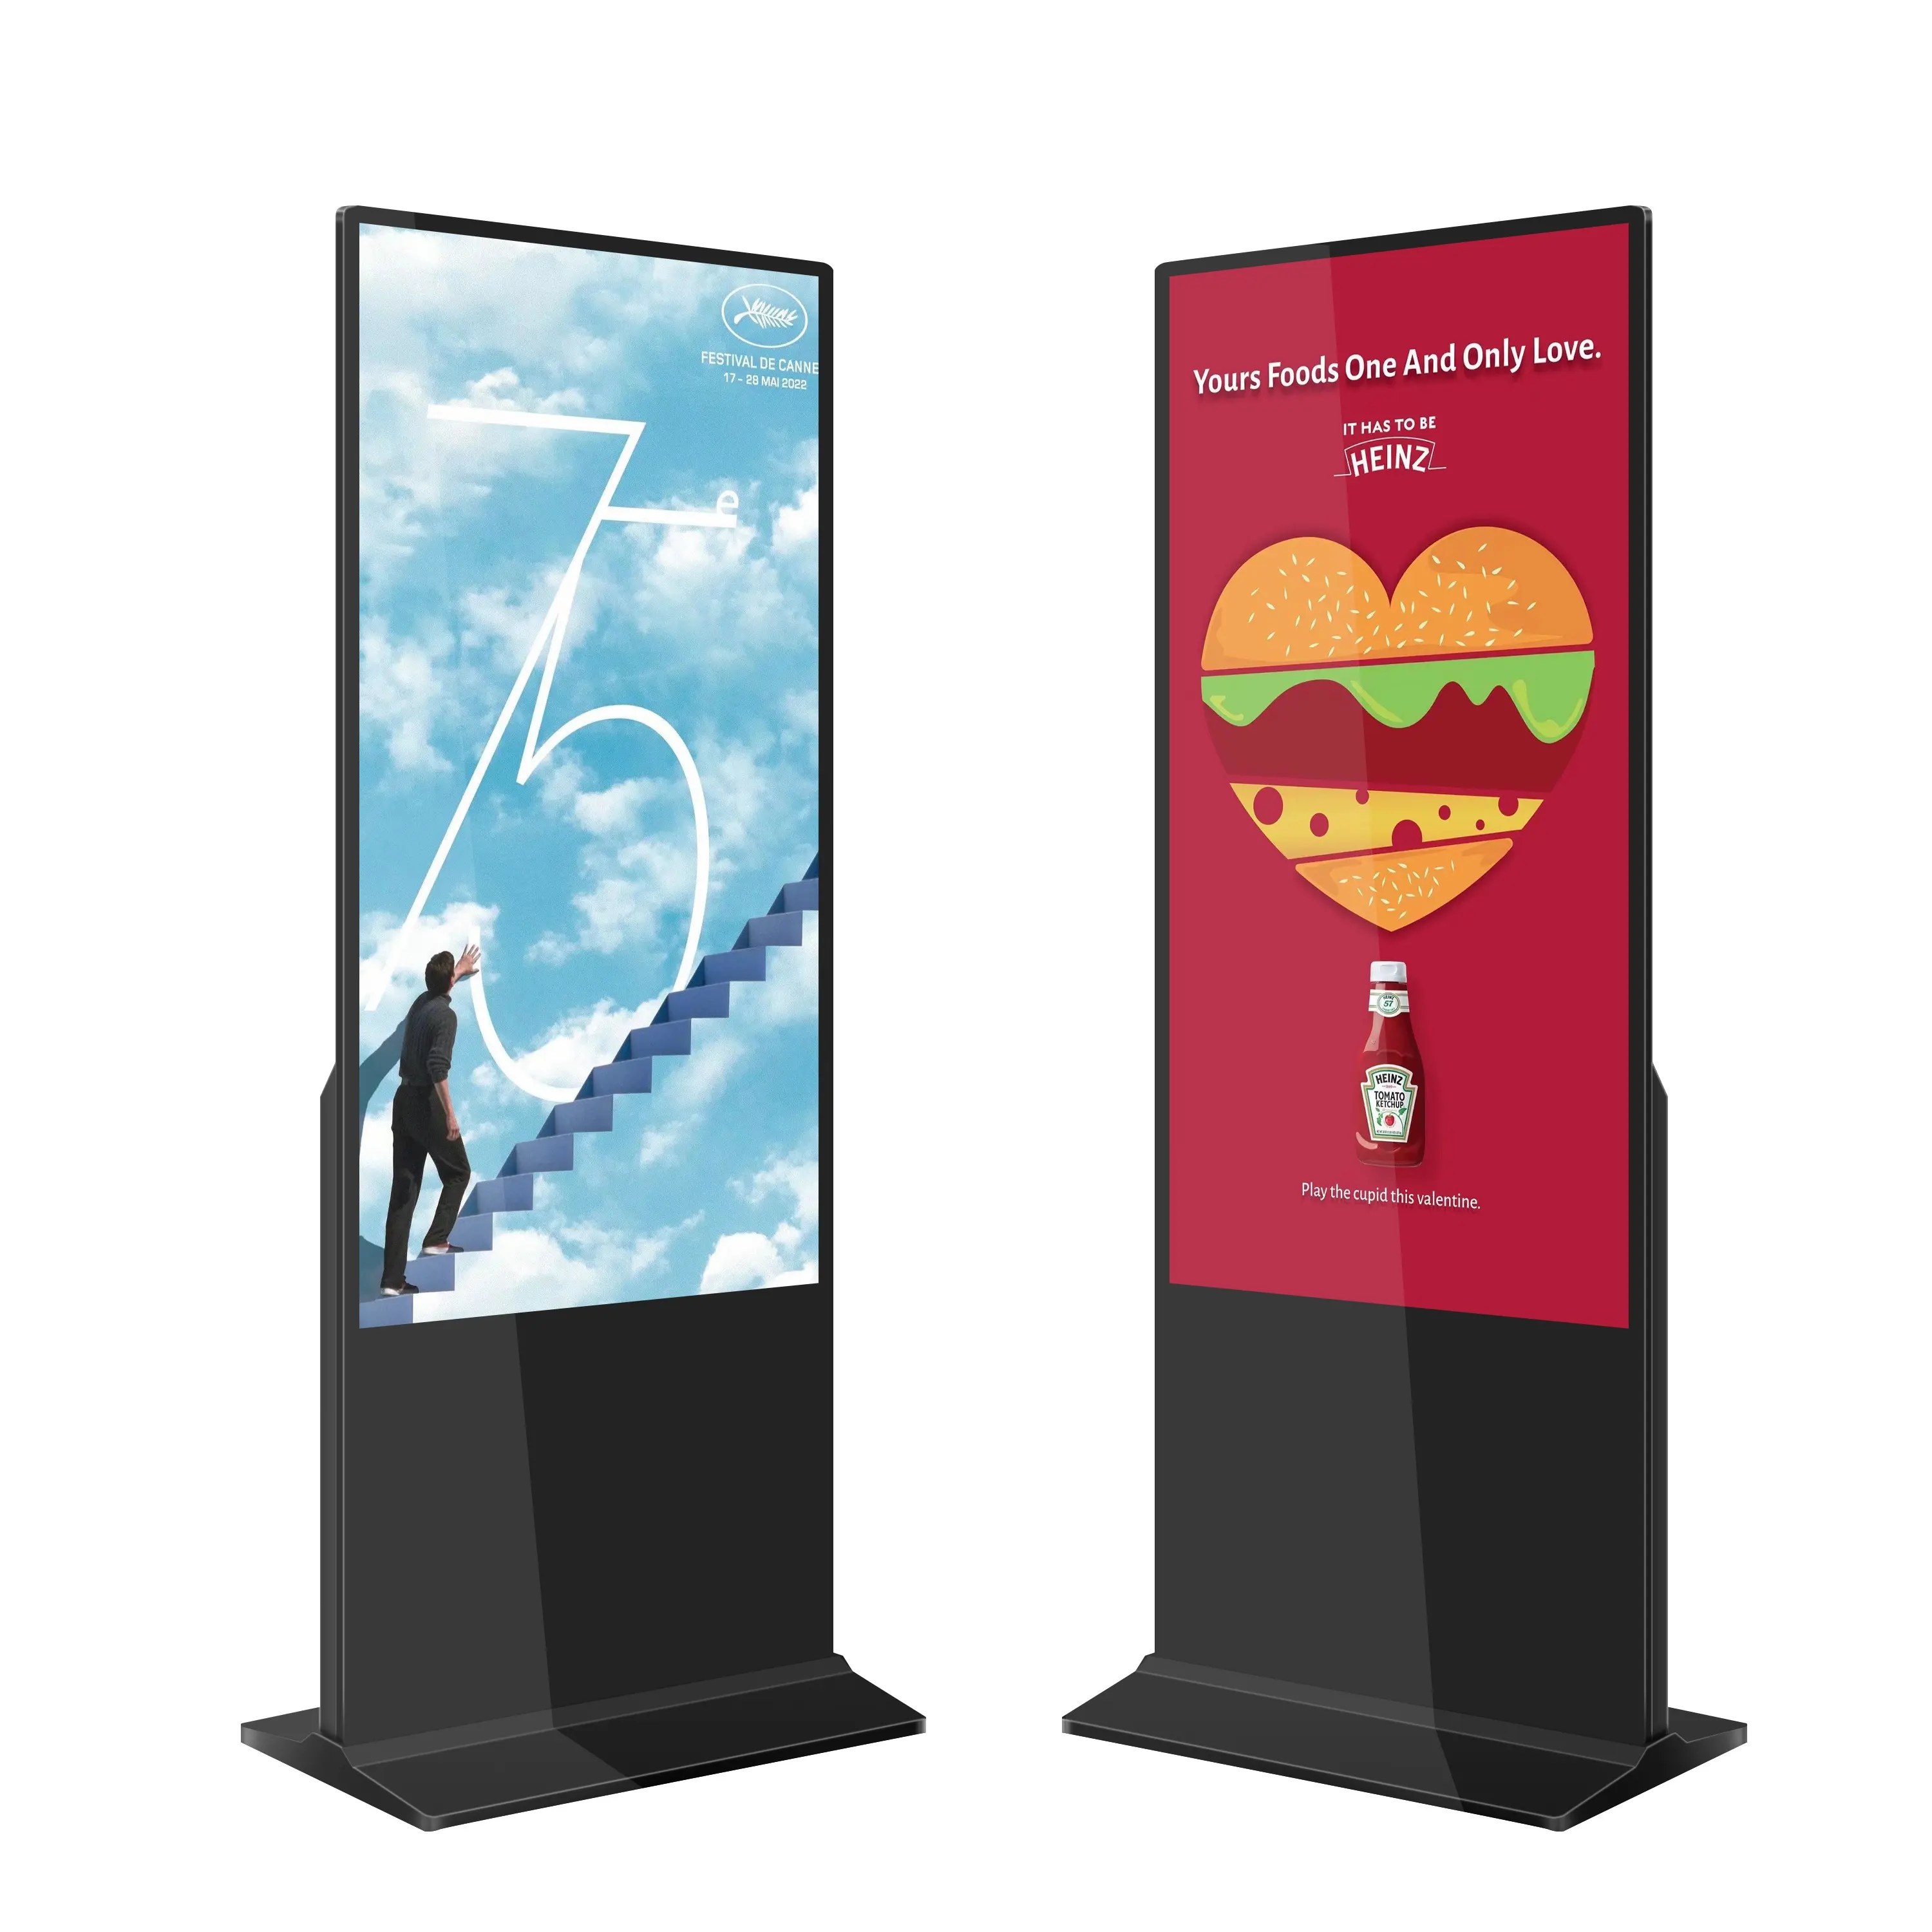 Tela infravermelha vertical de 55 polegadas, kiosk de propaganda interna com tela infravermelha, assinatura digital para comercial, lcd totem digital